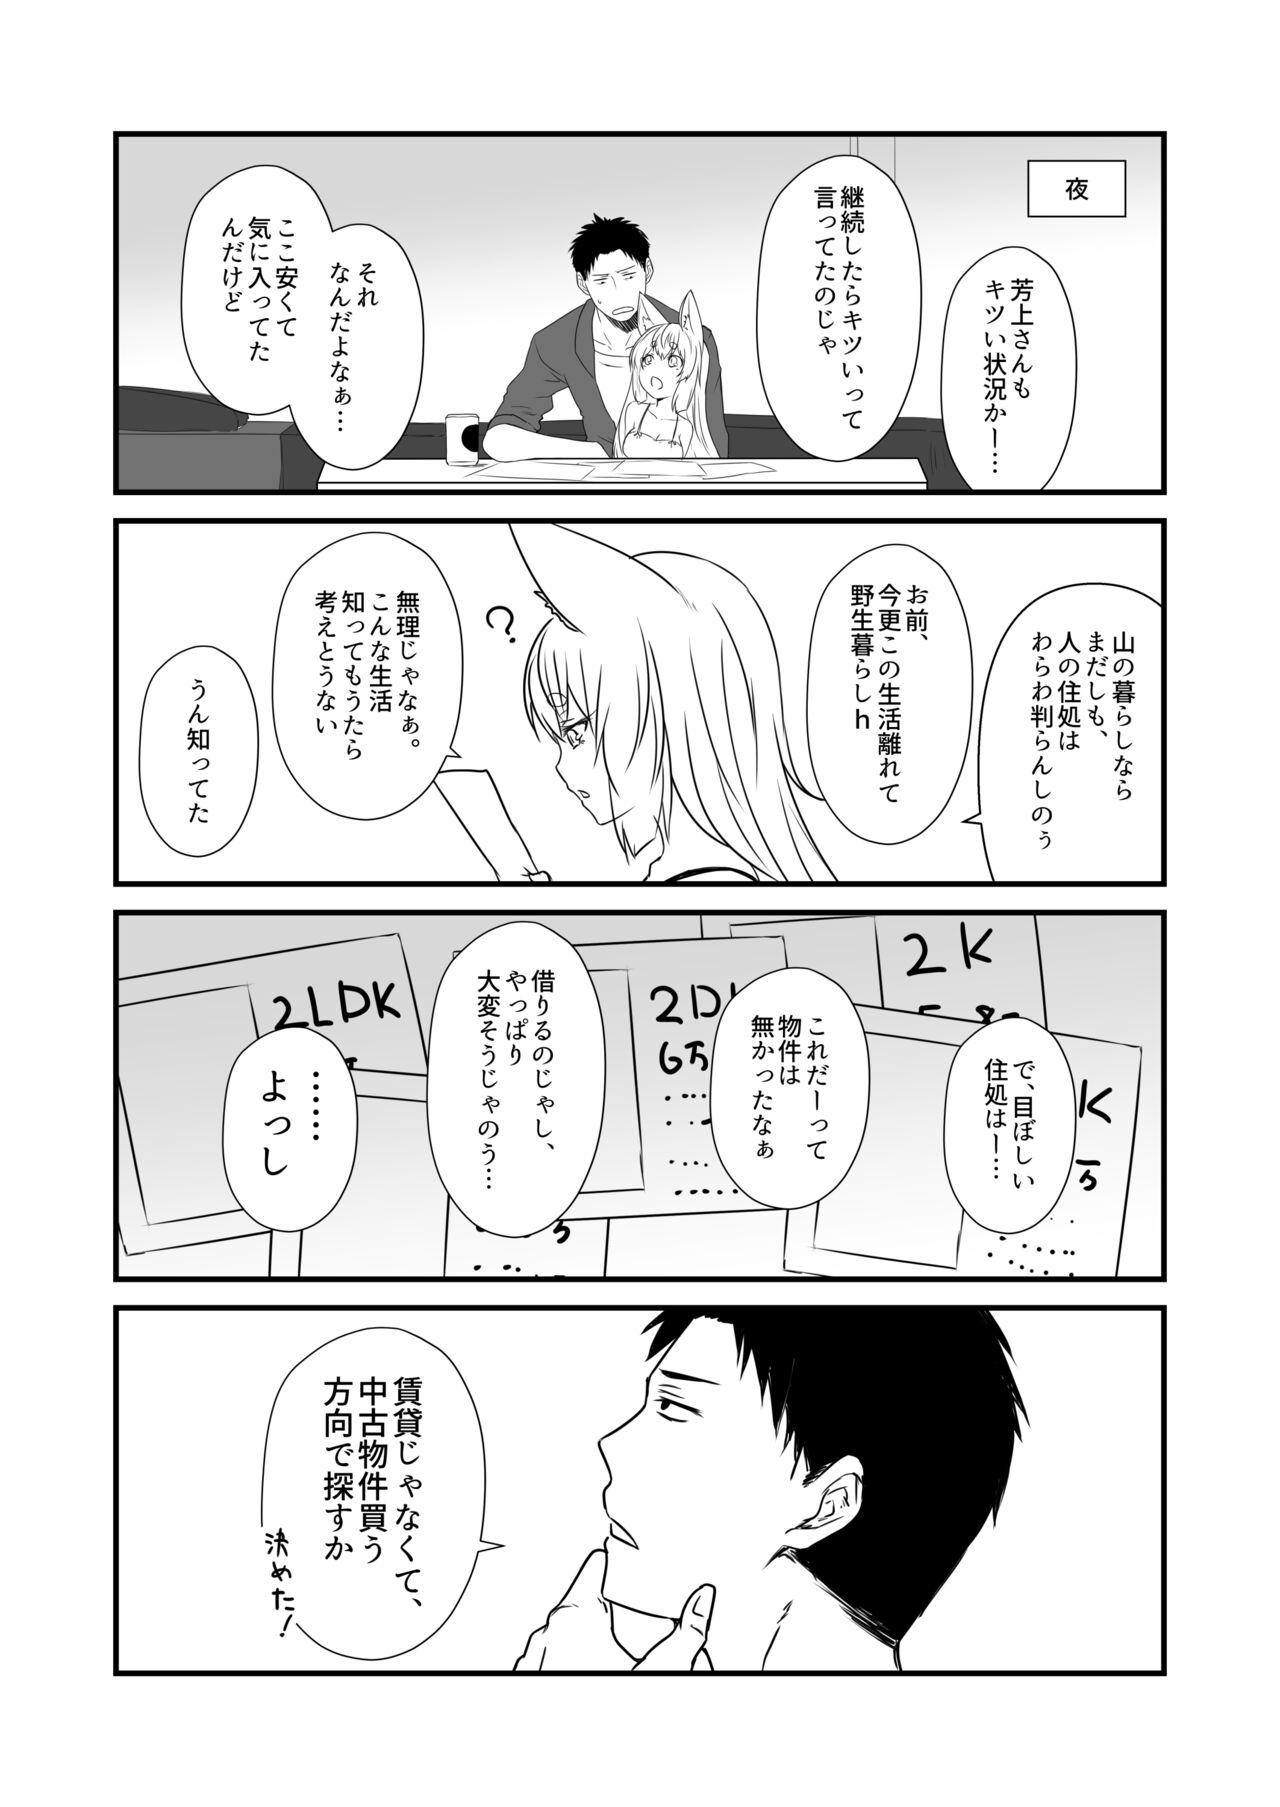 No Condom Kohaku Biyori Vol. 8 - Original Sharing - Page 7